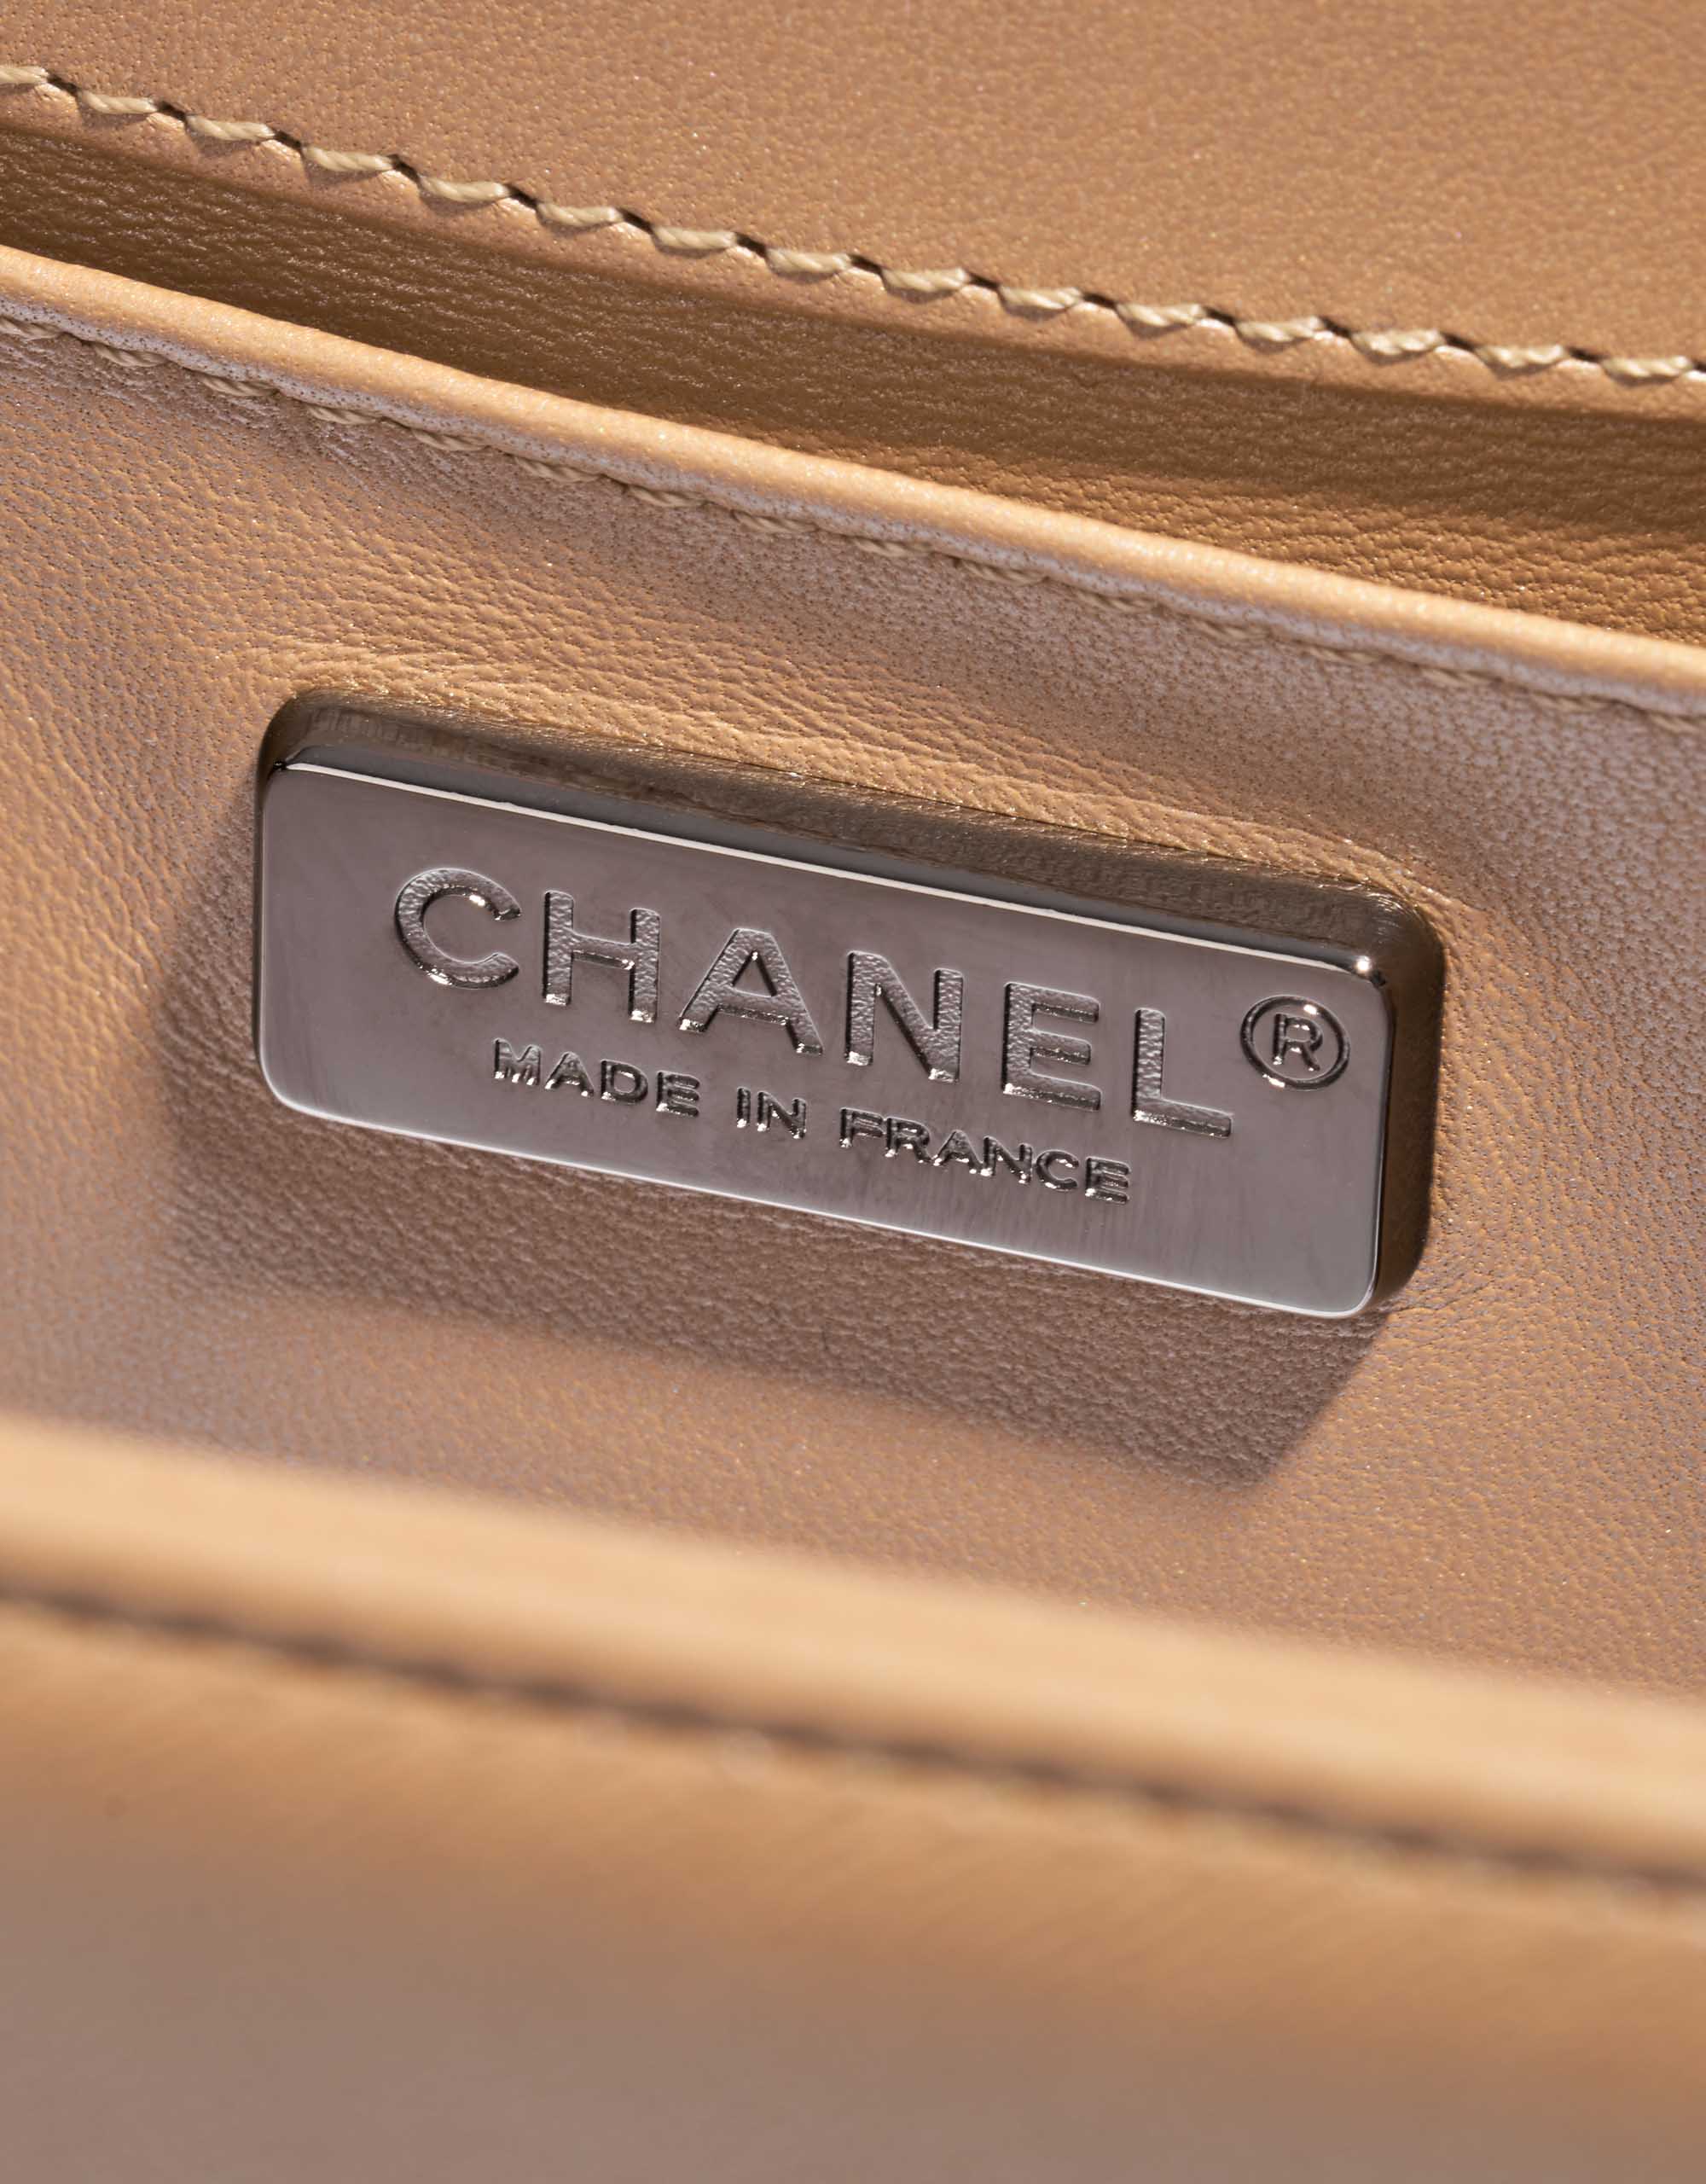 Gebrauchte Chanel Tasche Boy Old Medium Lizard Niloticus / Lammleder Gold / Natural Beige, Gold Logo | Verkaufen Sie Ihre Designer-Tasche auf Saclab.com